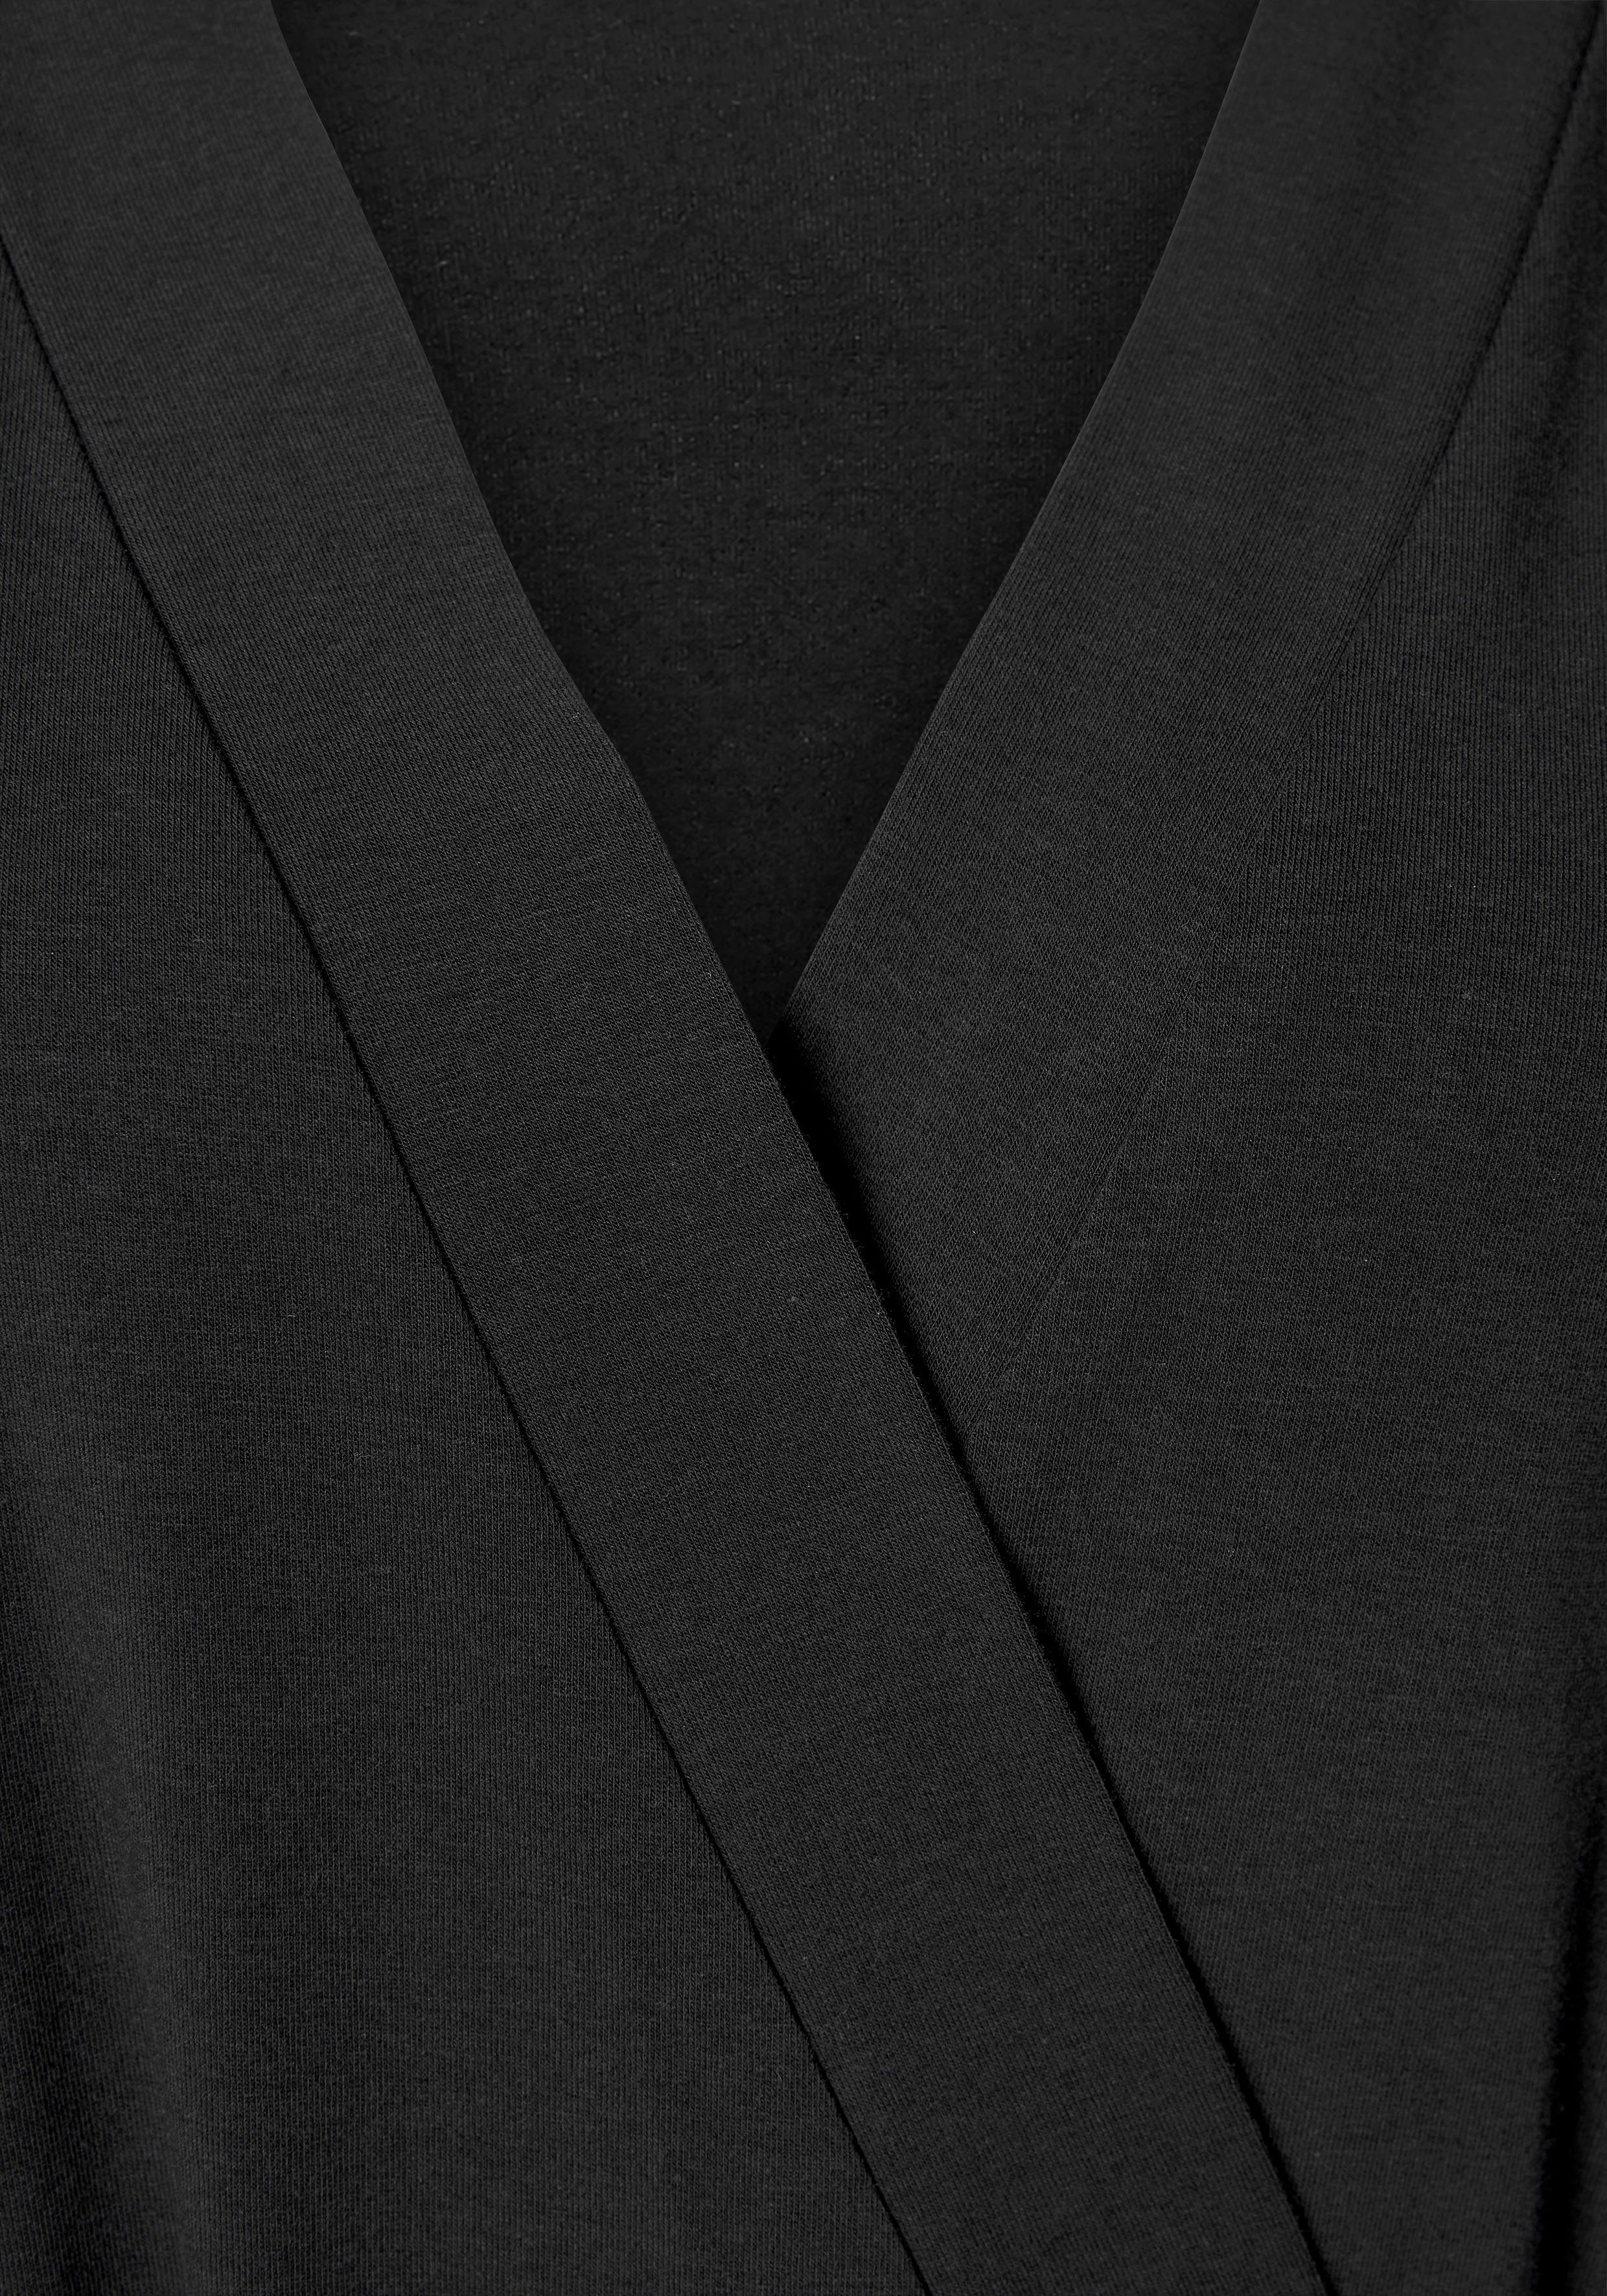 Ärmeln Kimono, schwarz LASCANA Gürtel, mit und weiten Baumwoll-Mix, Kurzform, Bindeband